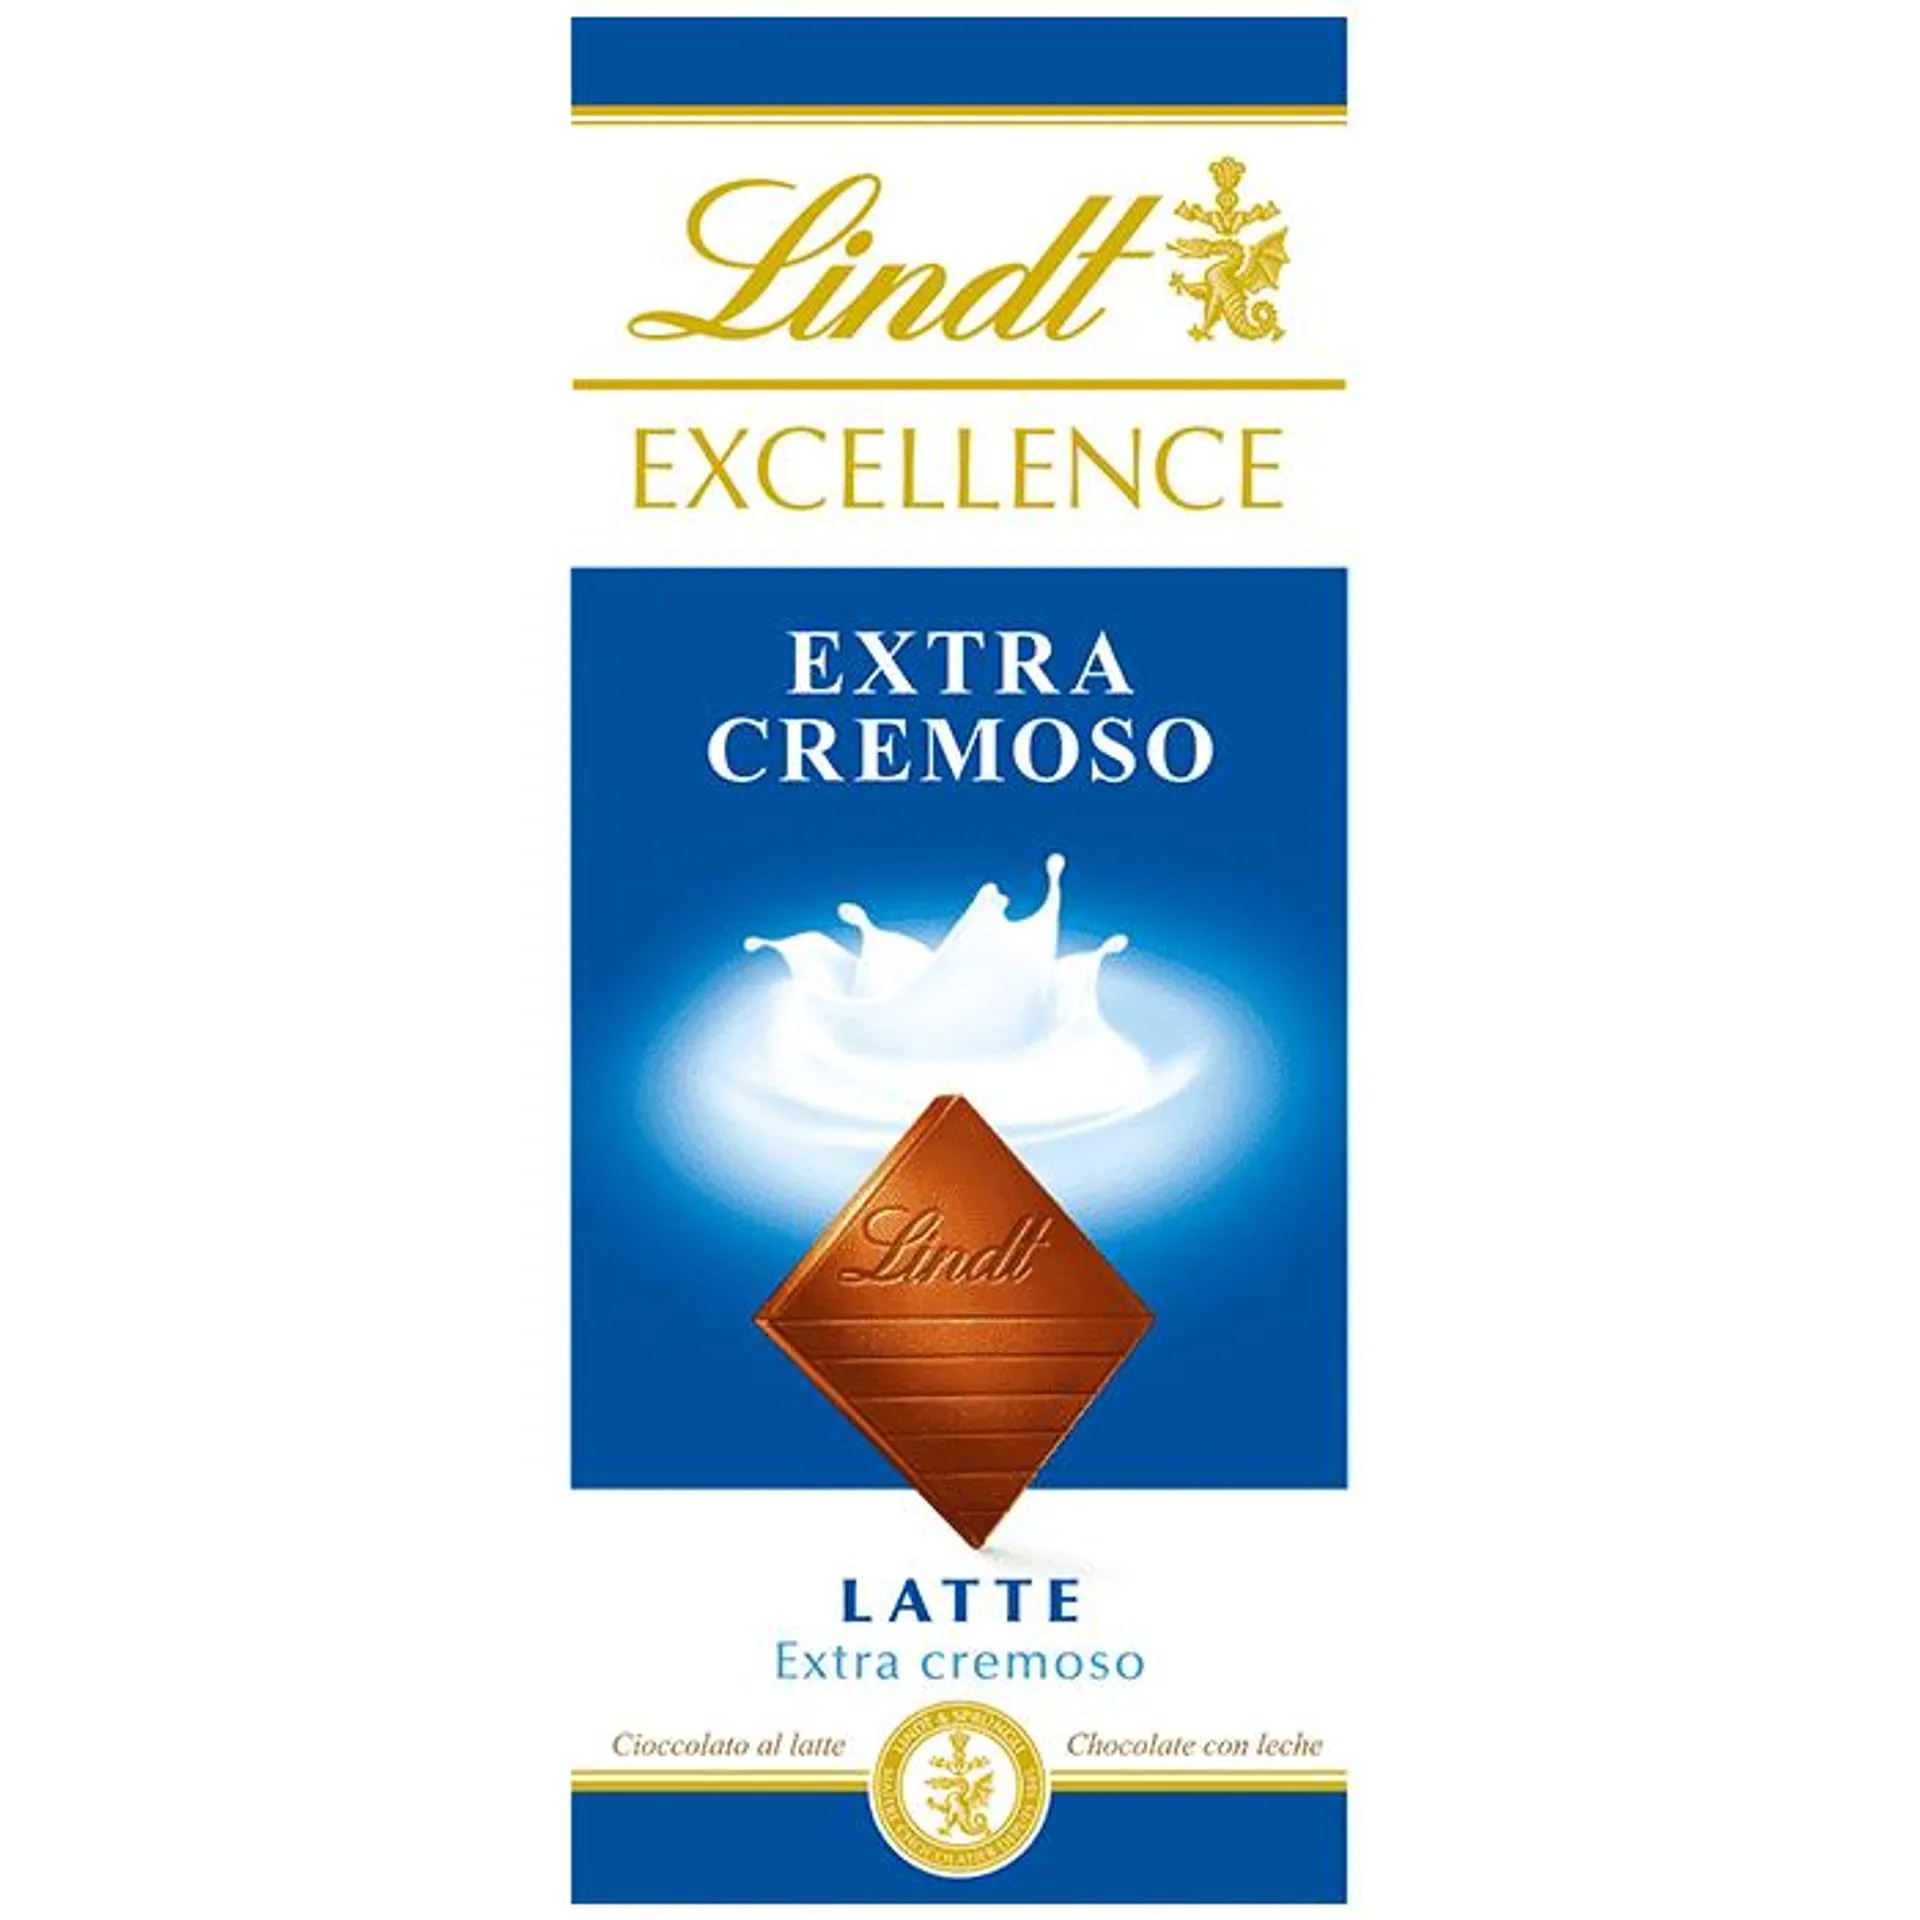 Tableta de Chocolate Excellence Leche 100g - Lindt